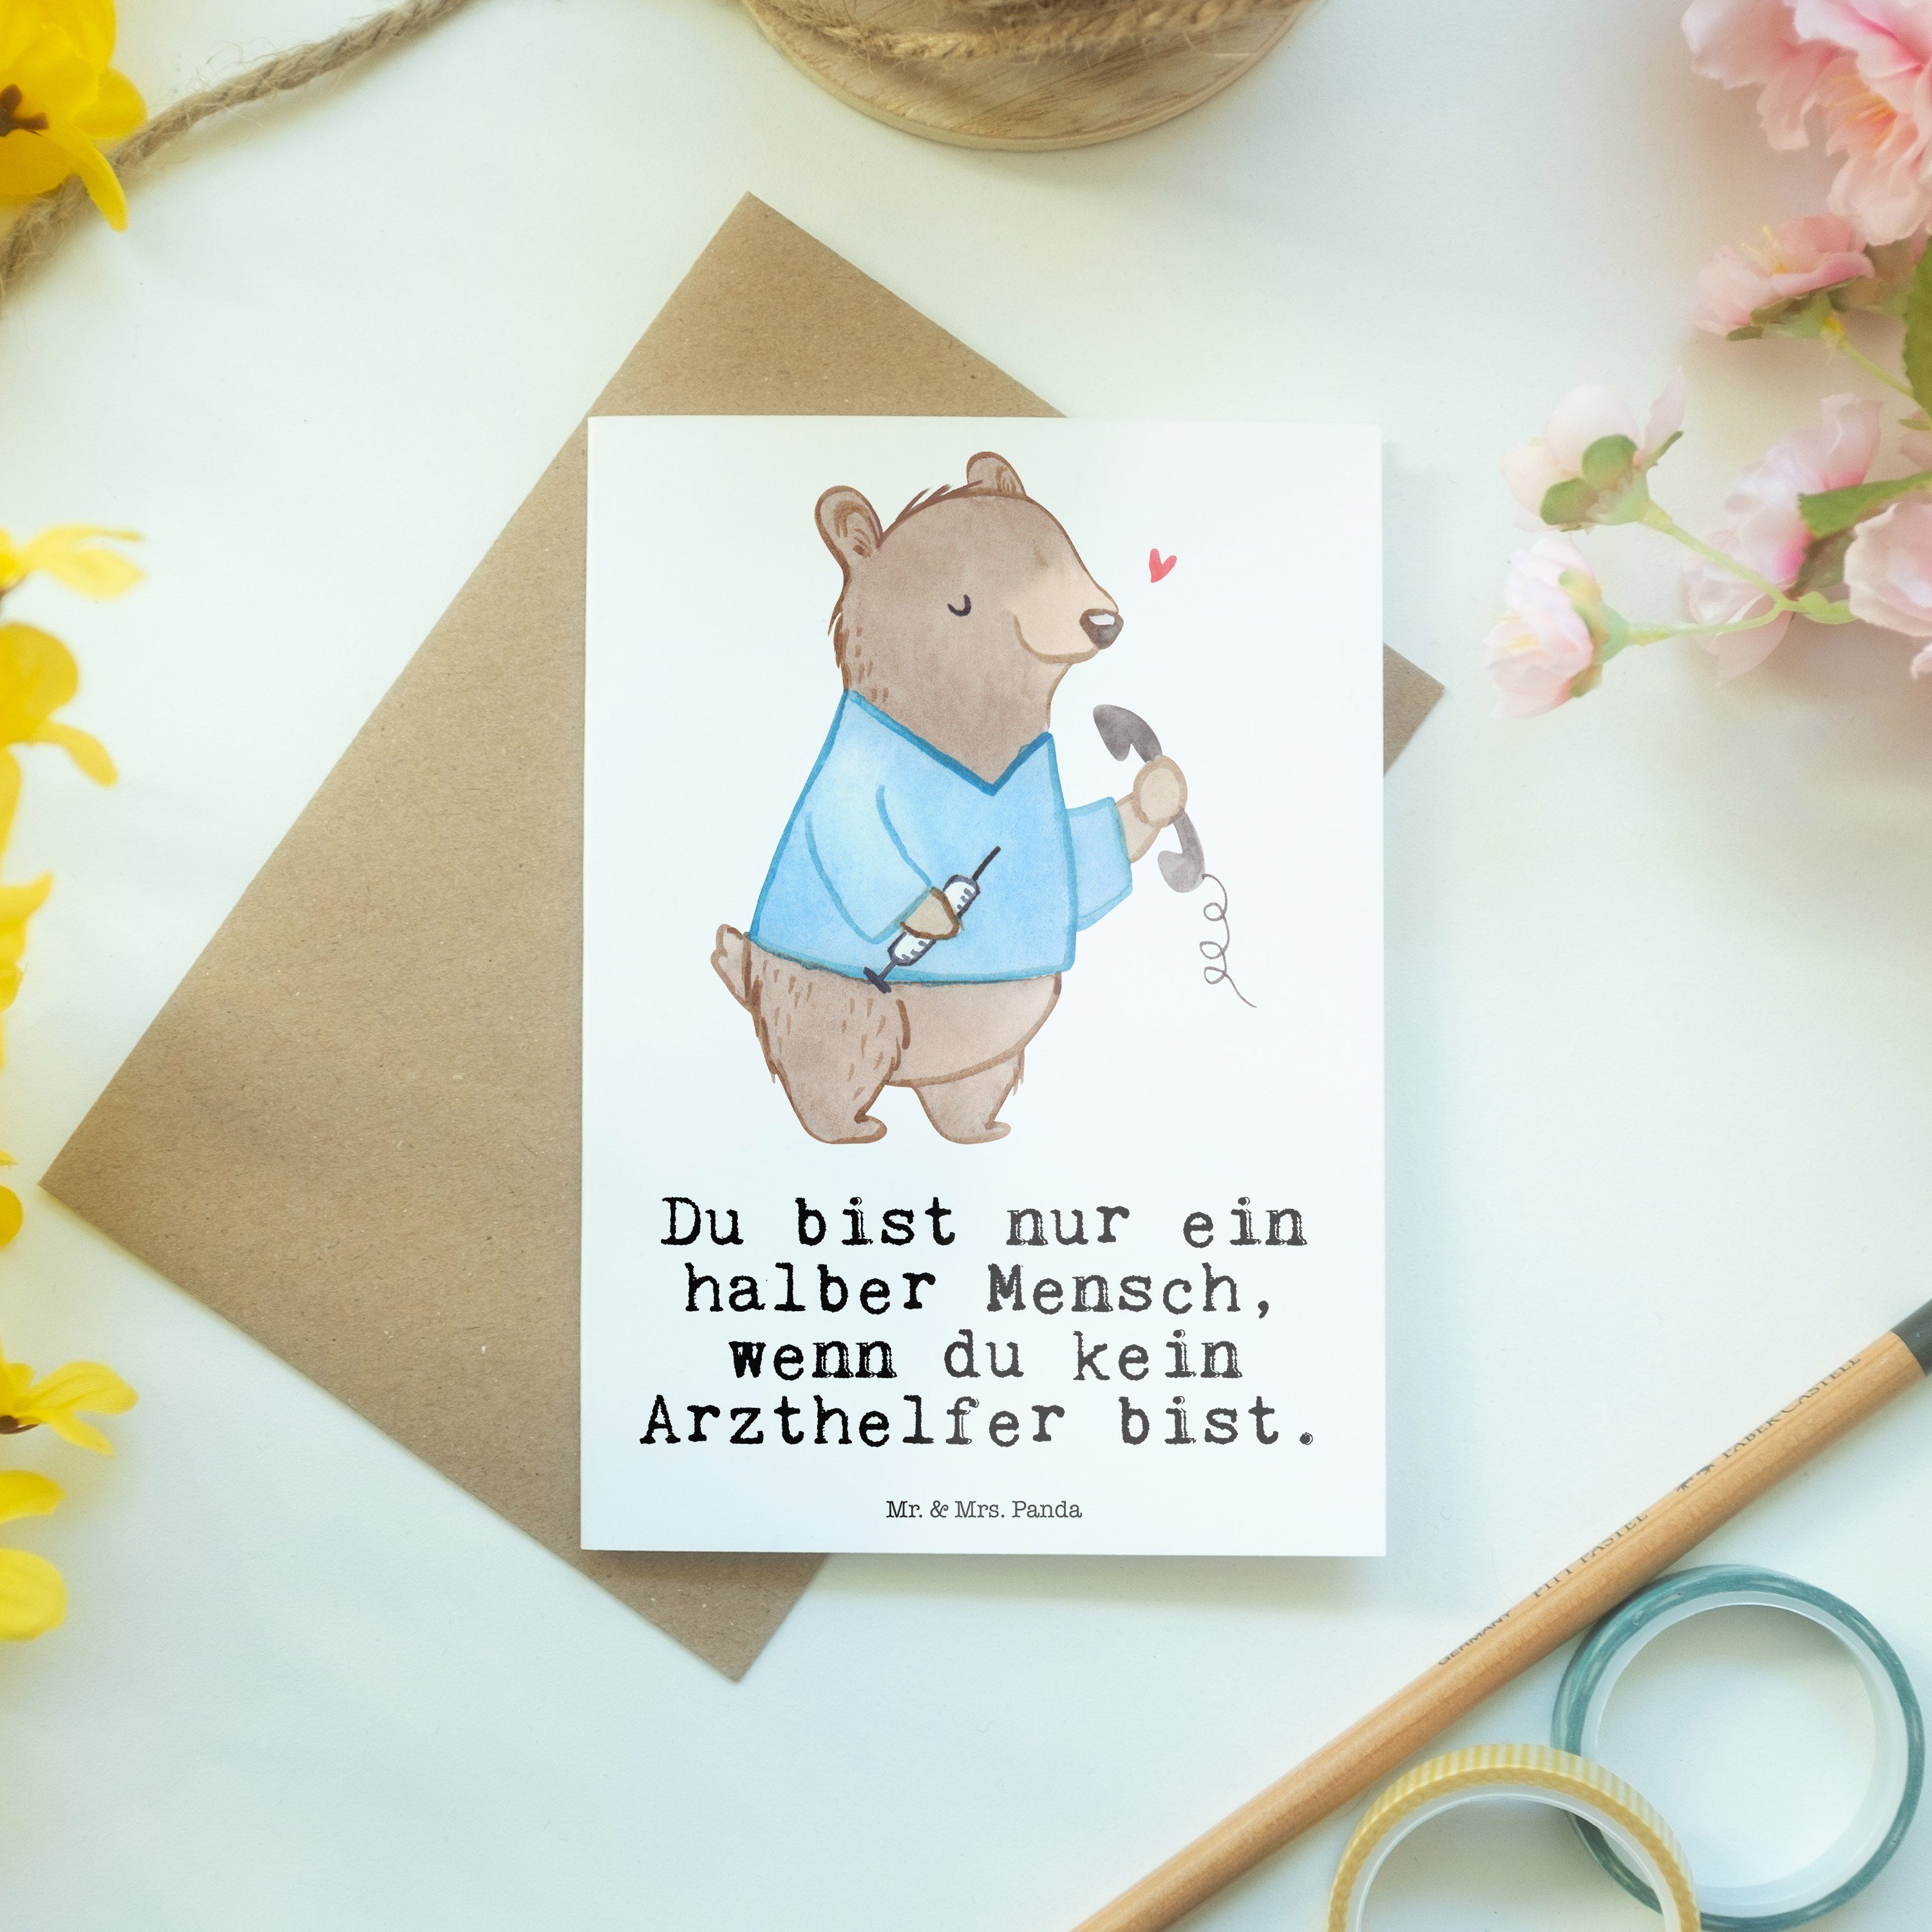 Weiß Arzthelfer & Geschenk, Panda Karte Geburtstagskarte, - - Mr. Grußkarte mit Herz Rente, Mrs.